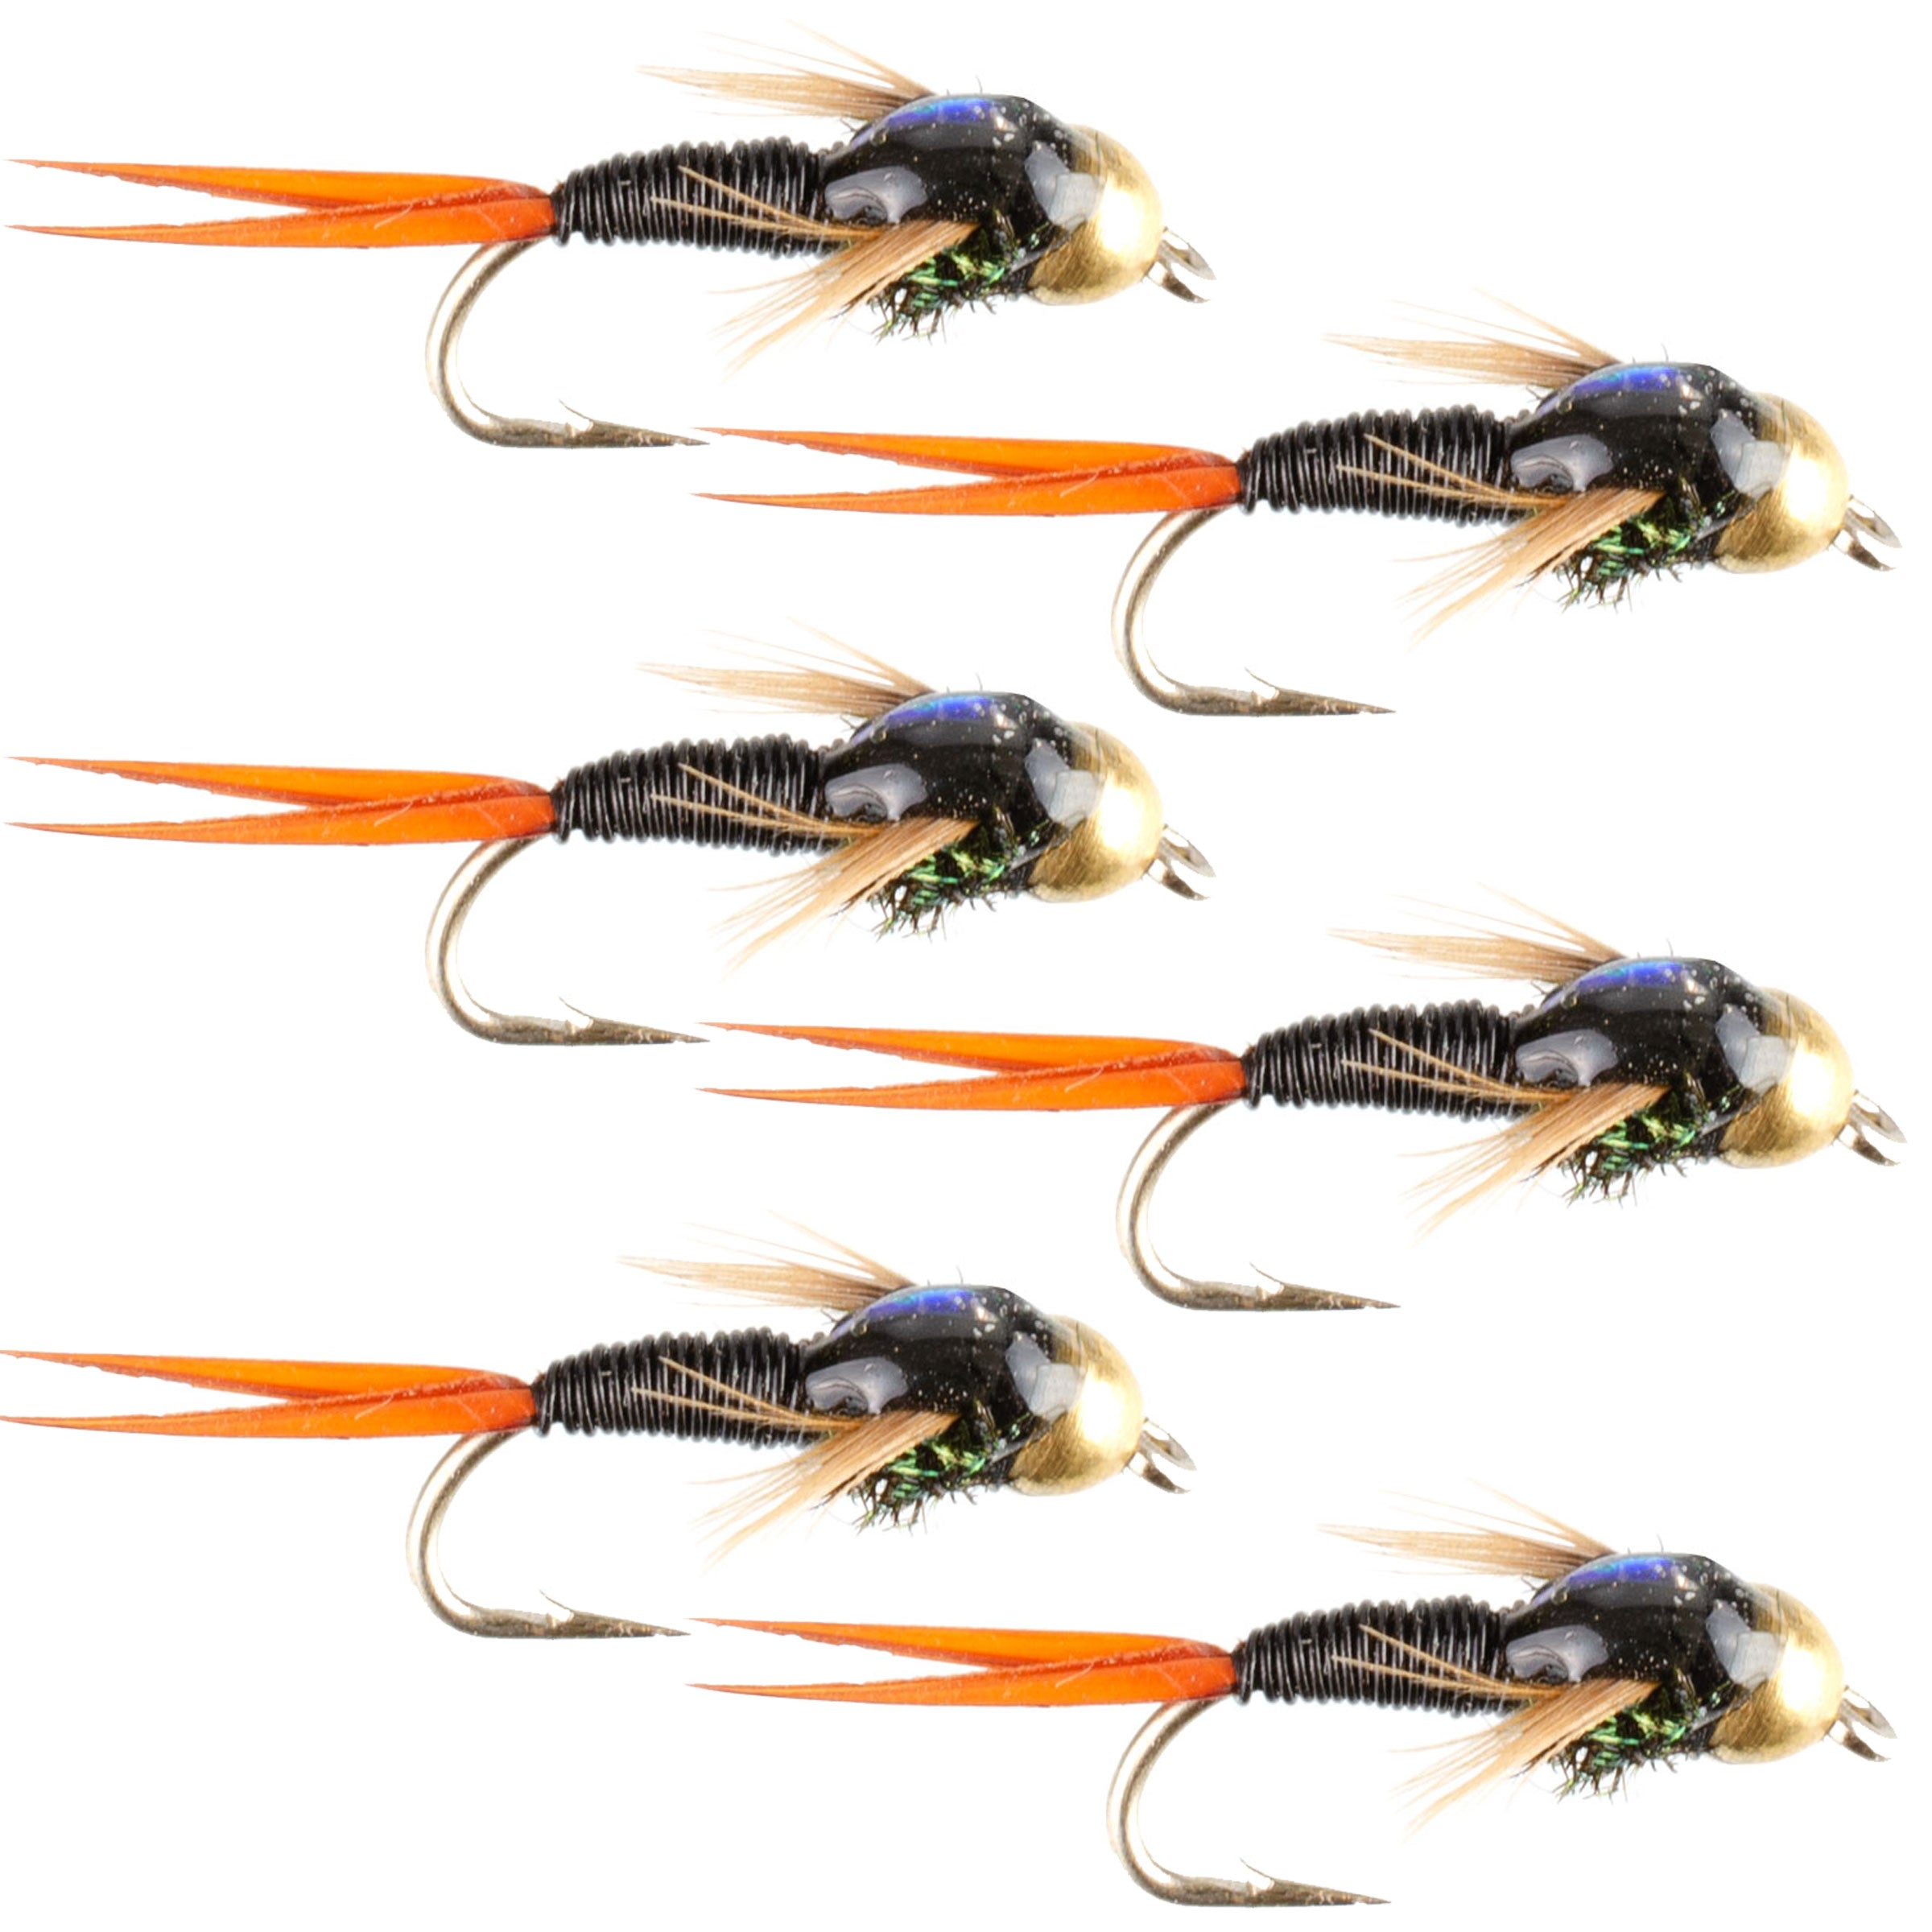 Bead Head Black Copper John Nymph Fly Fishing Flies - Set of 6 Flies Hook Size 16